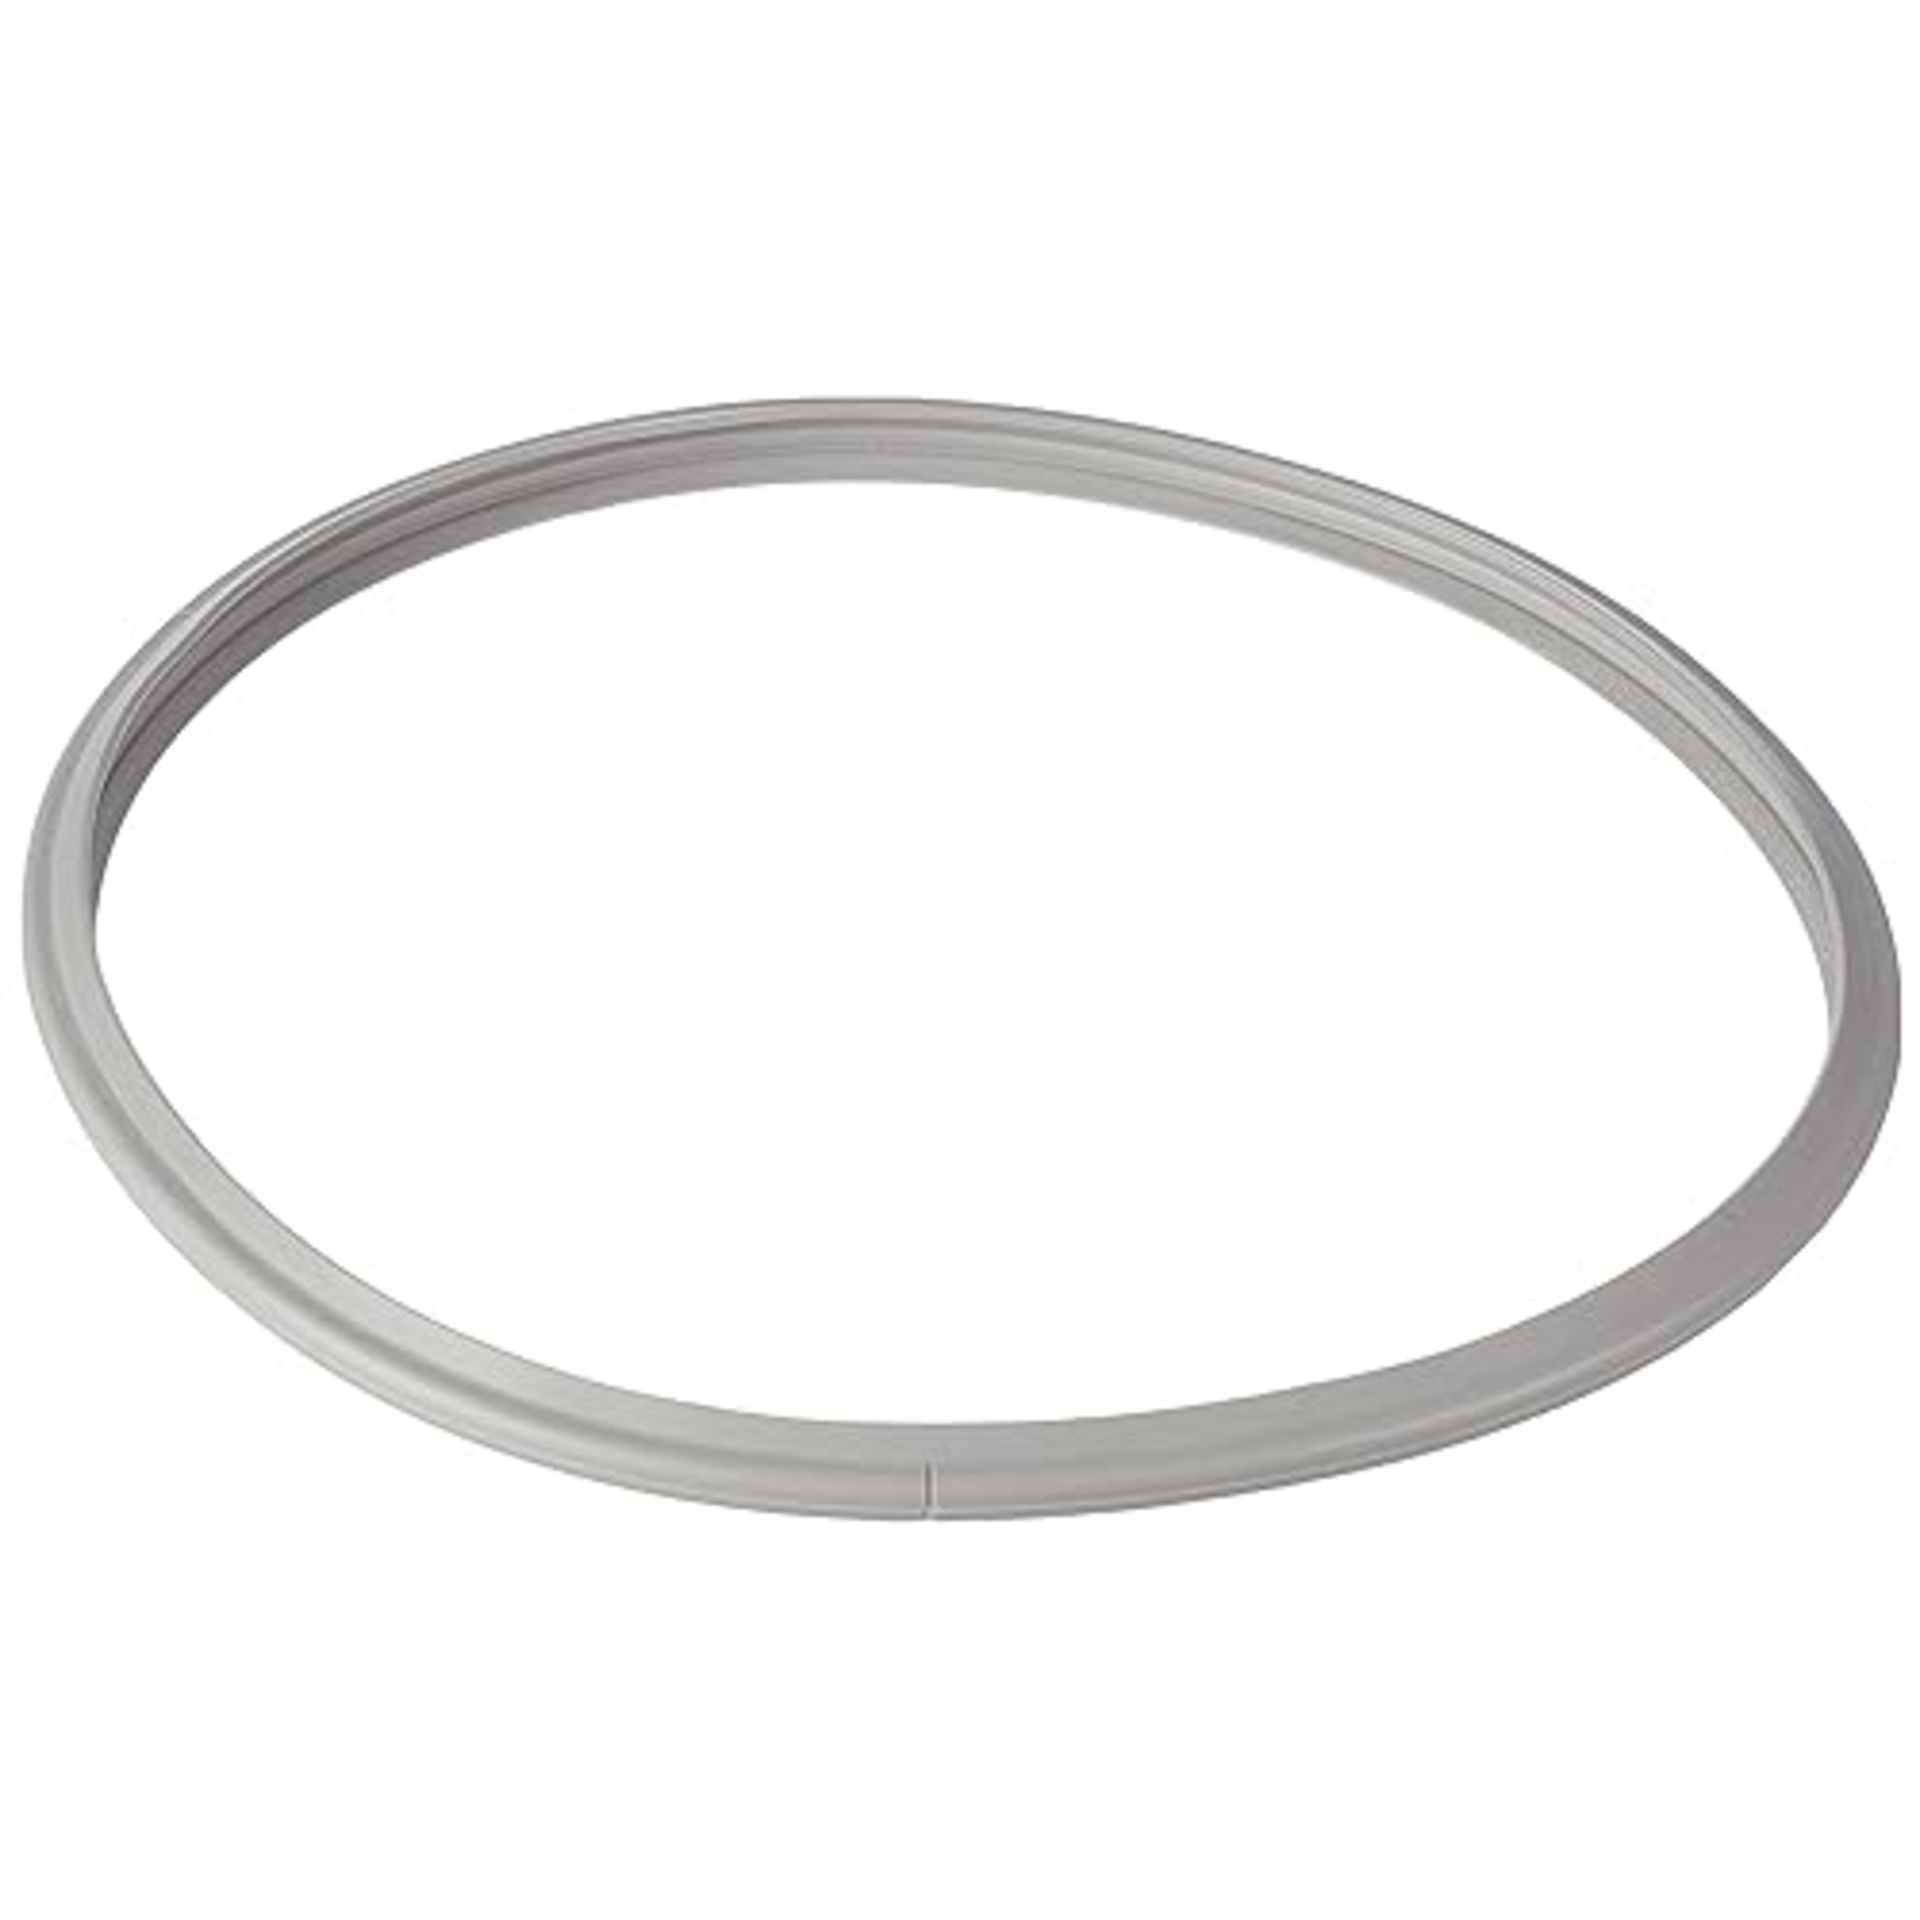 Fissler Pressure cooker sealing ring - original replacement seal - 038-687-00-205/0 - plastic, grey